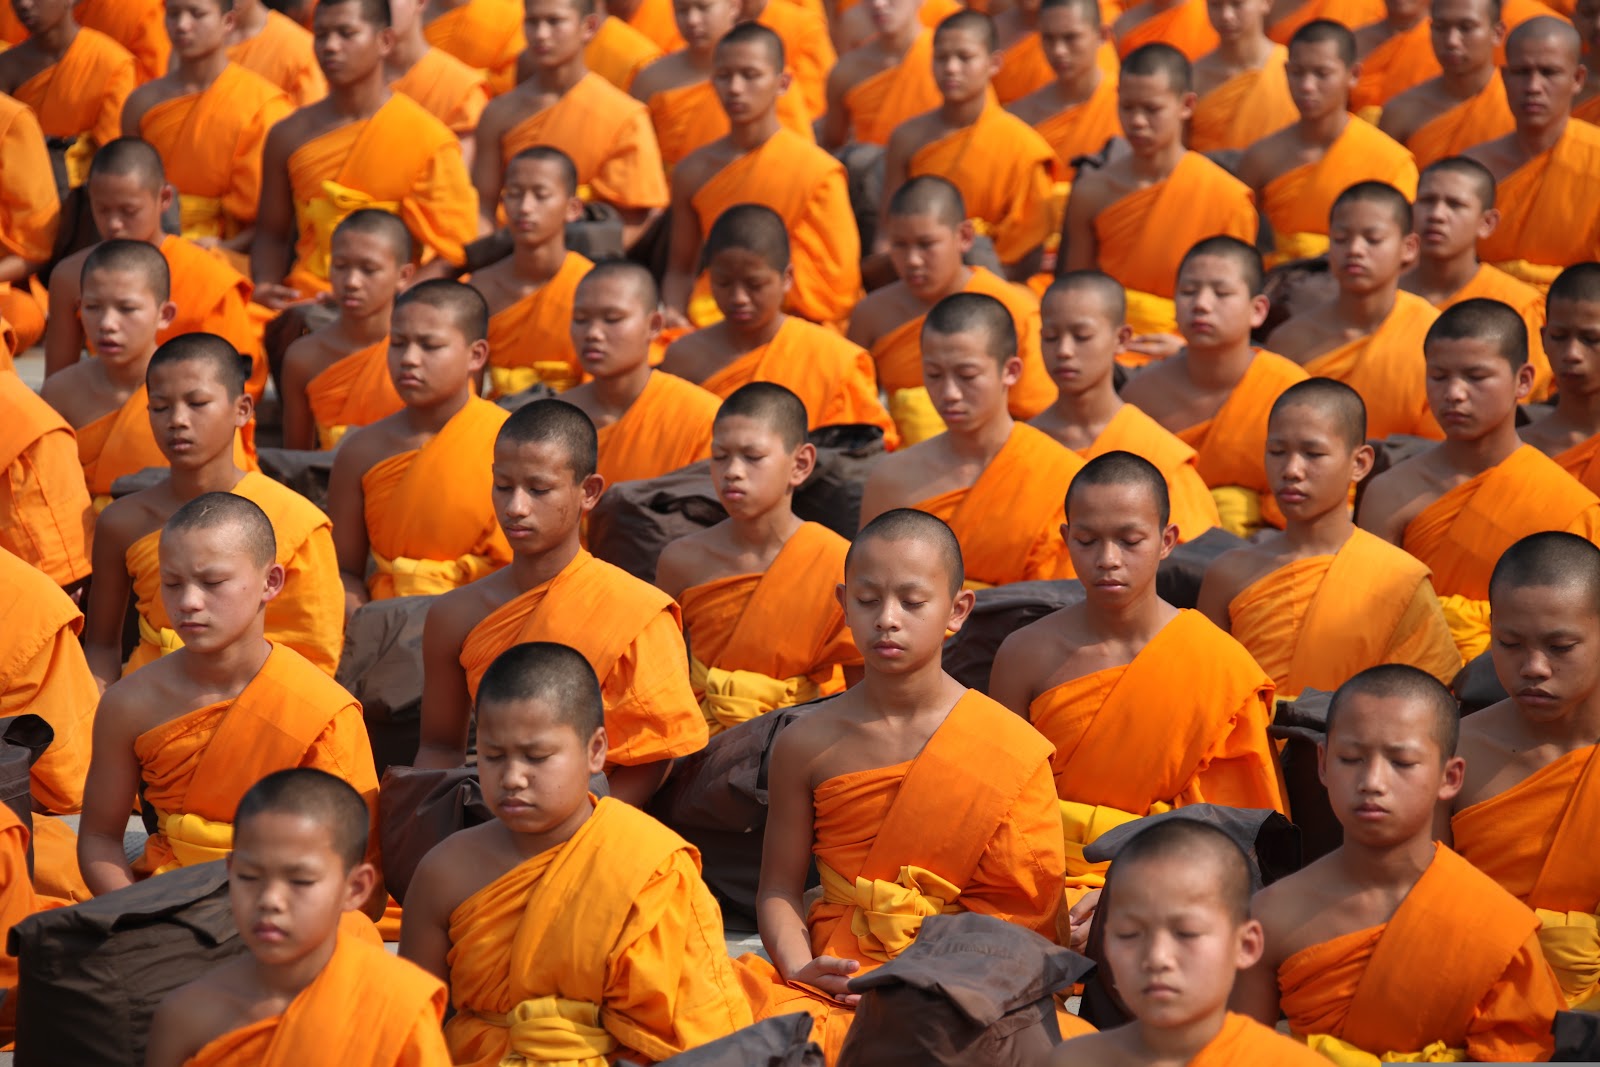 オレンジの僧衣を着て瞑想するタイ人の仏教徒たち